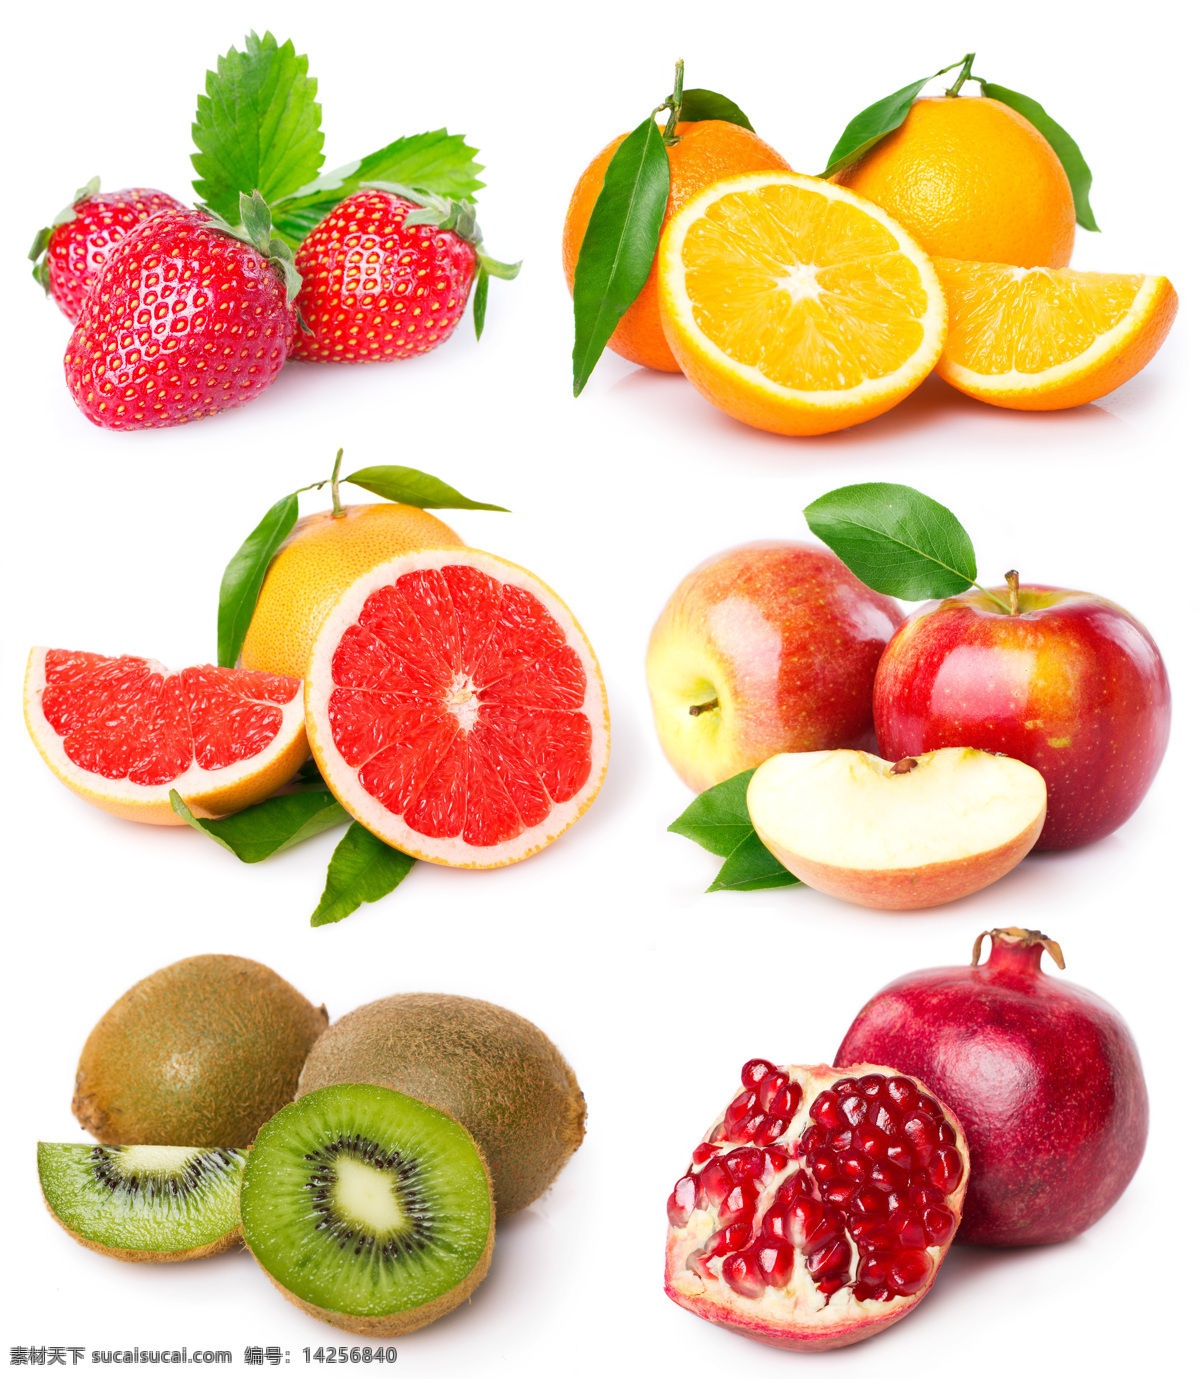 新鲜 水果 心形 草莓 橙子 柚子 苹果 猕猴桃 石榴 食物 美食 水果图片 餐饮美食